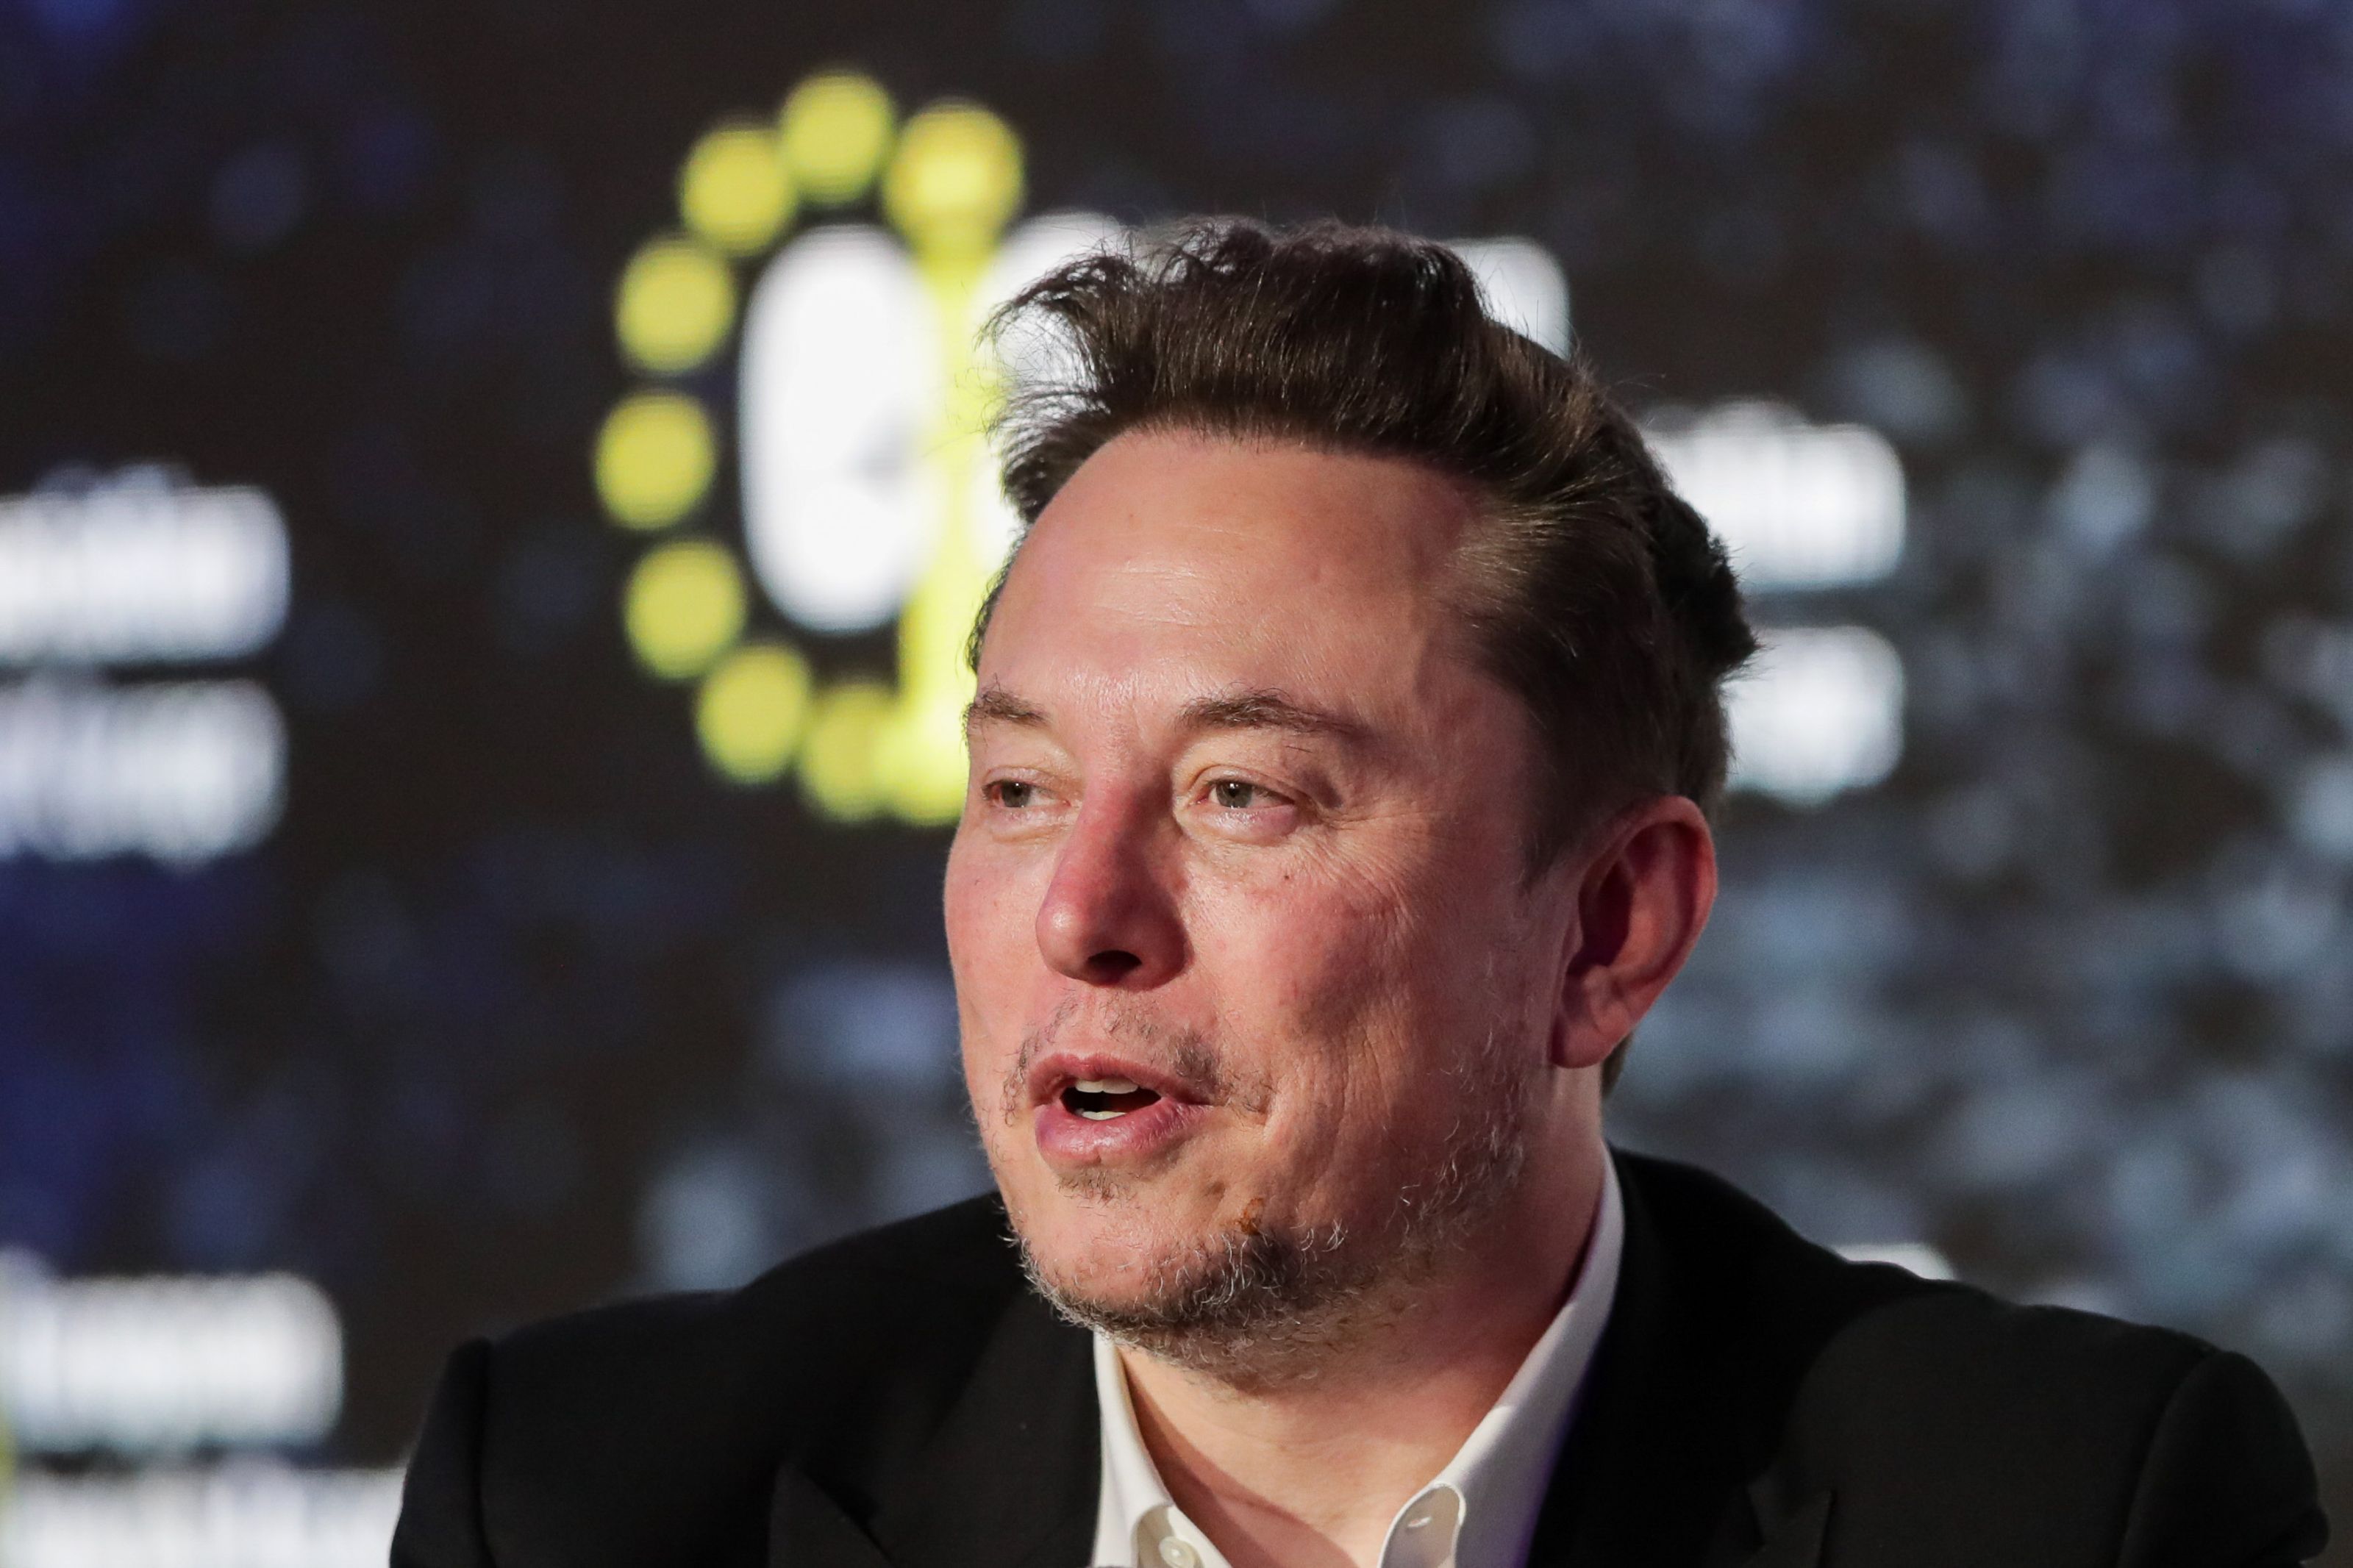 Banii şi drogurile care îl leagă pe Elon Musk de unii directori Tesla. Cum au obţinut membrii consiliului de administraţie sute de milioane de euro din acţiuni şi investiţii separate ca prieteni de petreceri al lui Musk